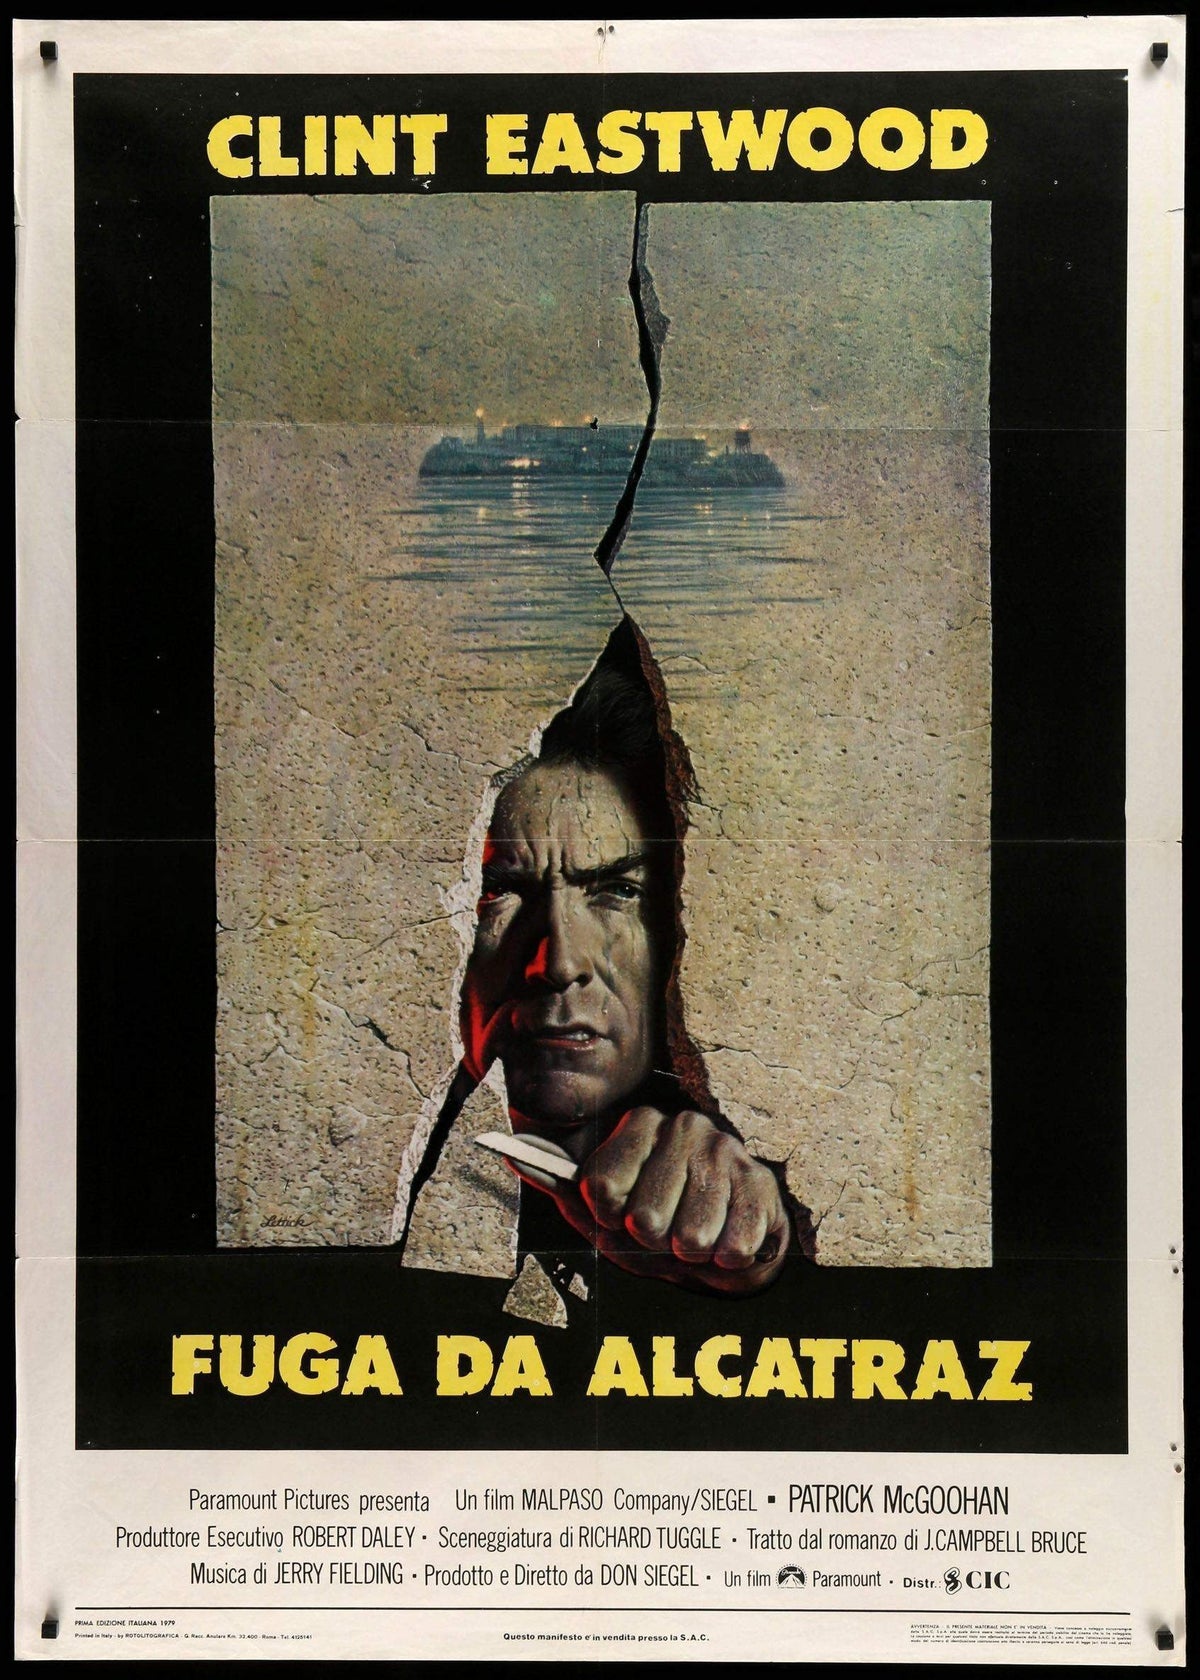 escape from alcatraz movie